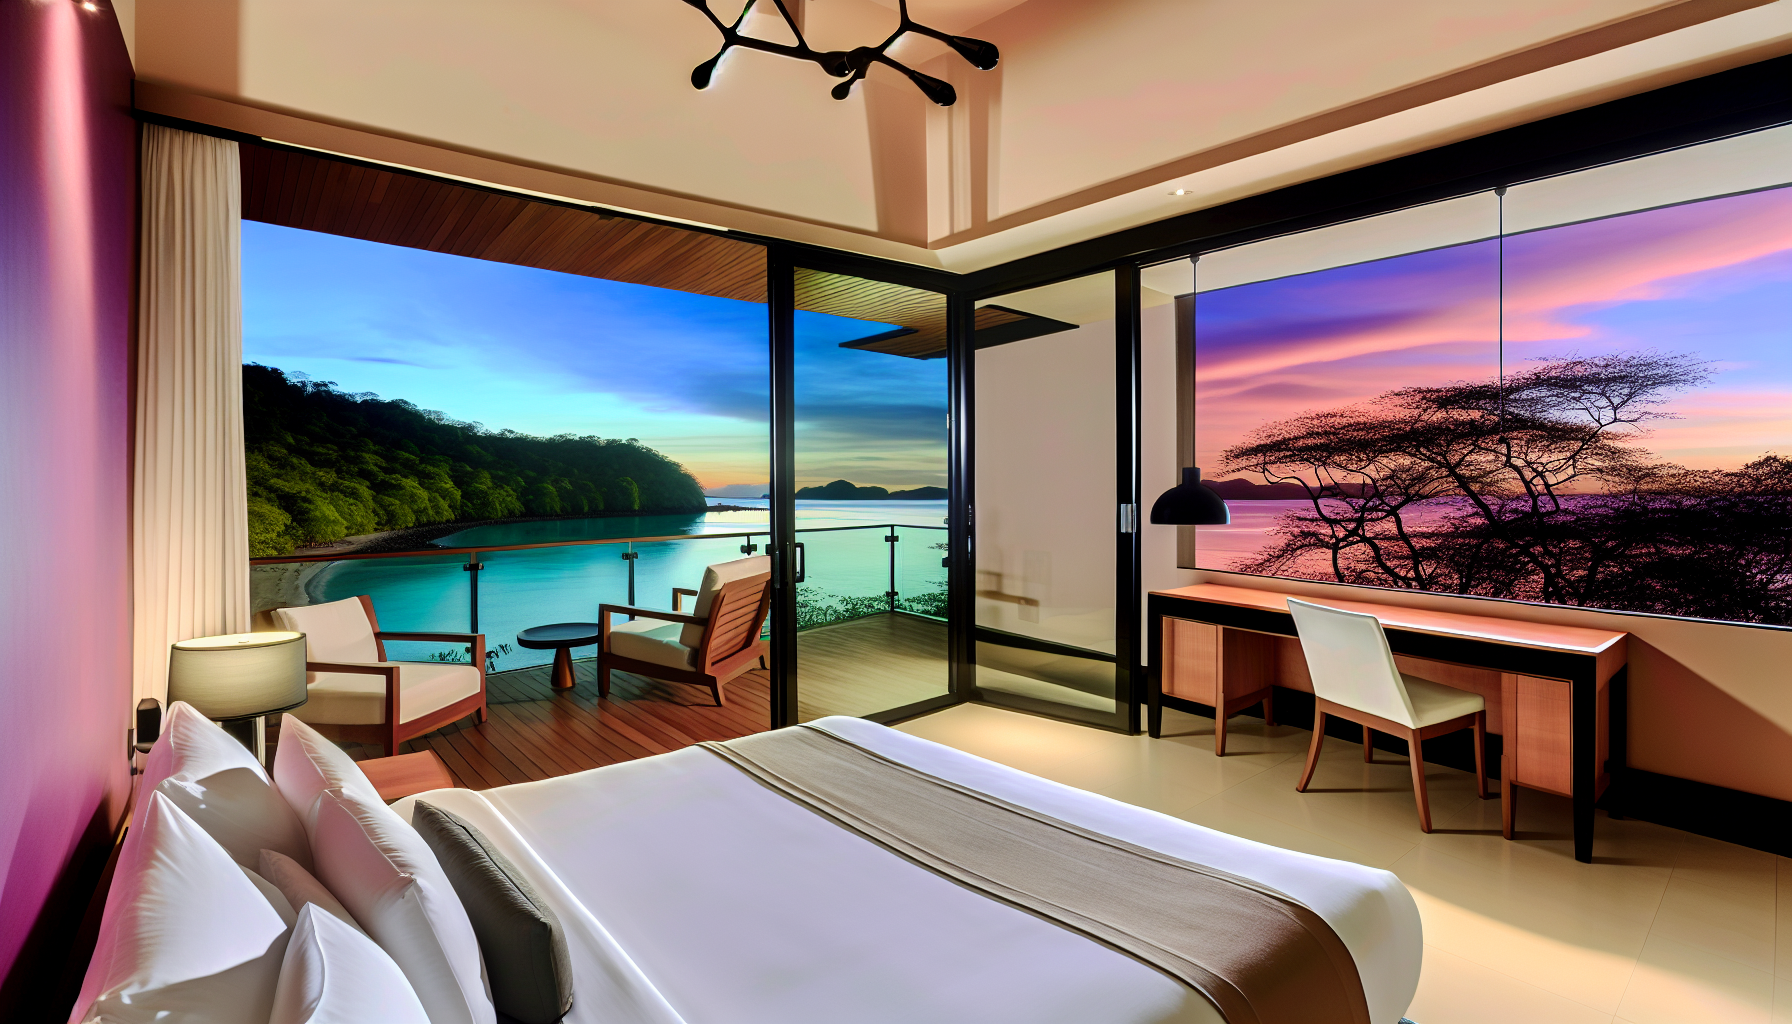 Ocean-view suite in a Papagayo resort overlooking Playa Blanca